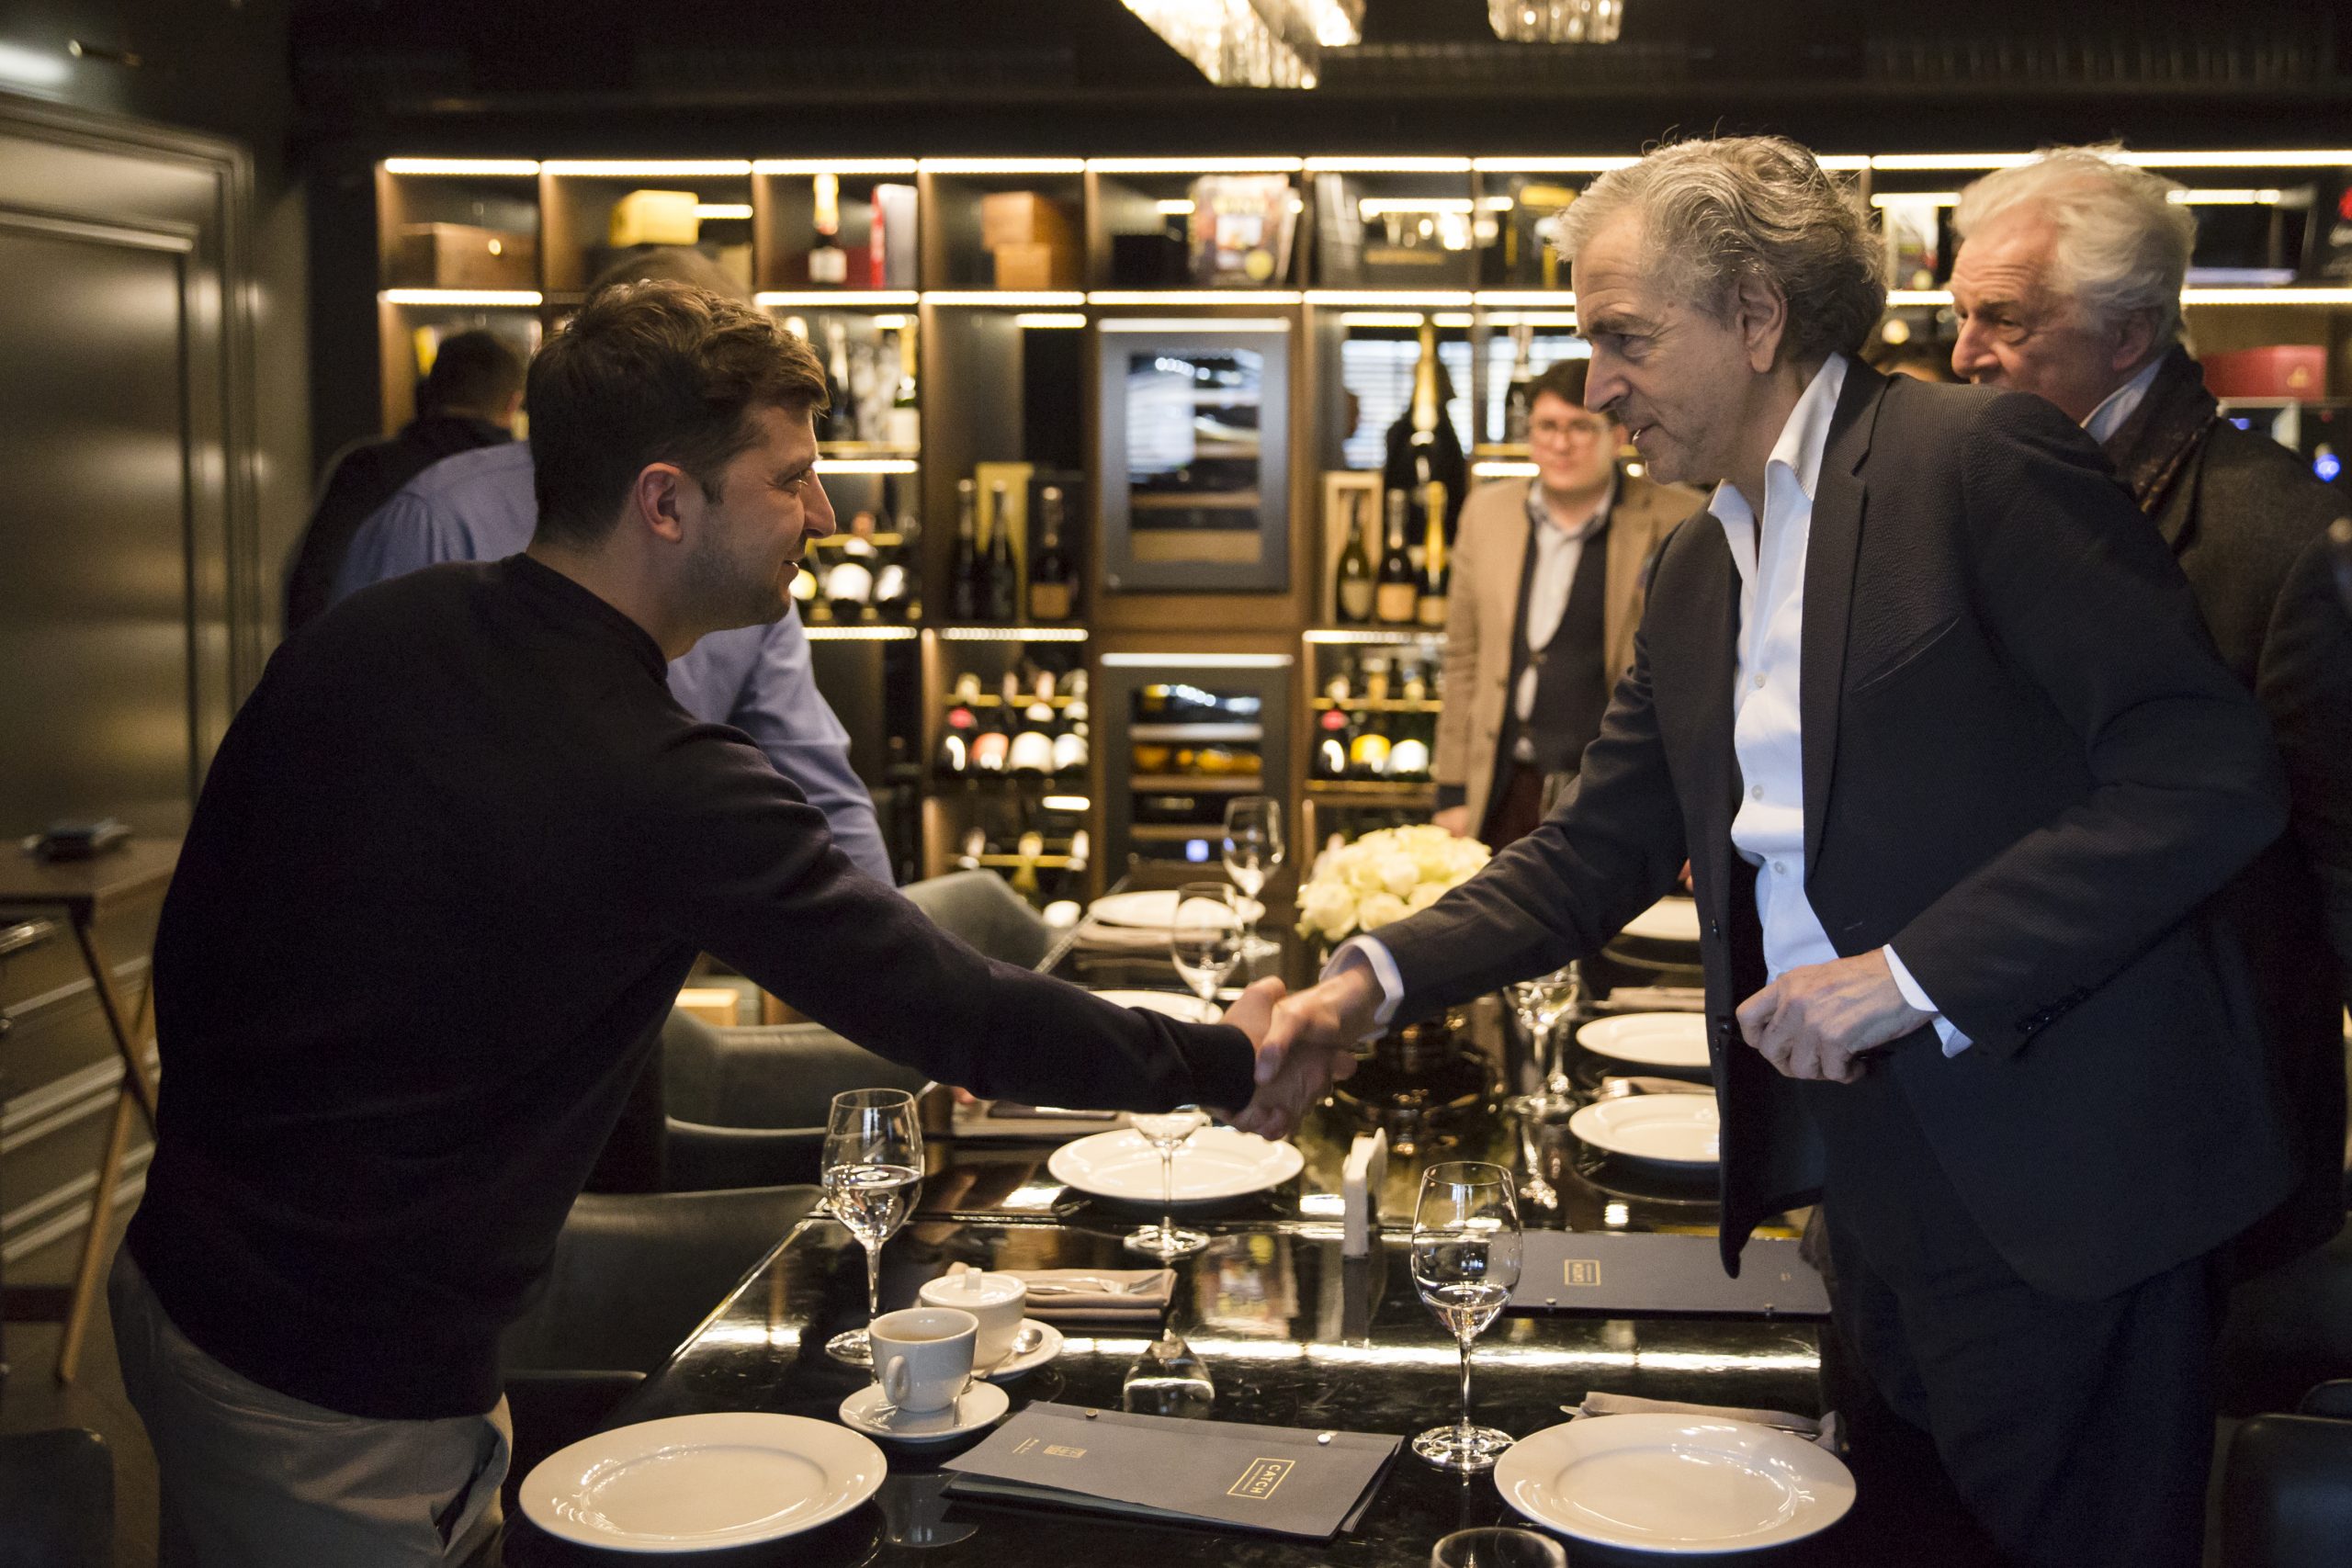 Rencontre entre Bernard-Henri Levy et Volodymyr Zelensky se serrent la main au dessus de la table d'un restaurant.